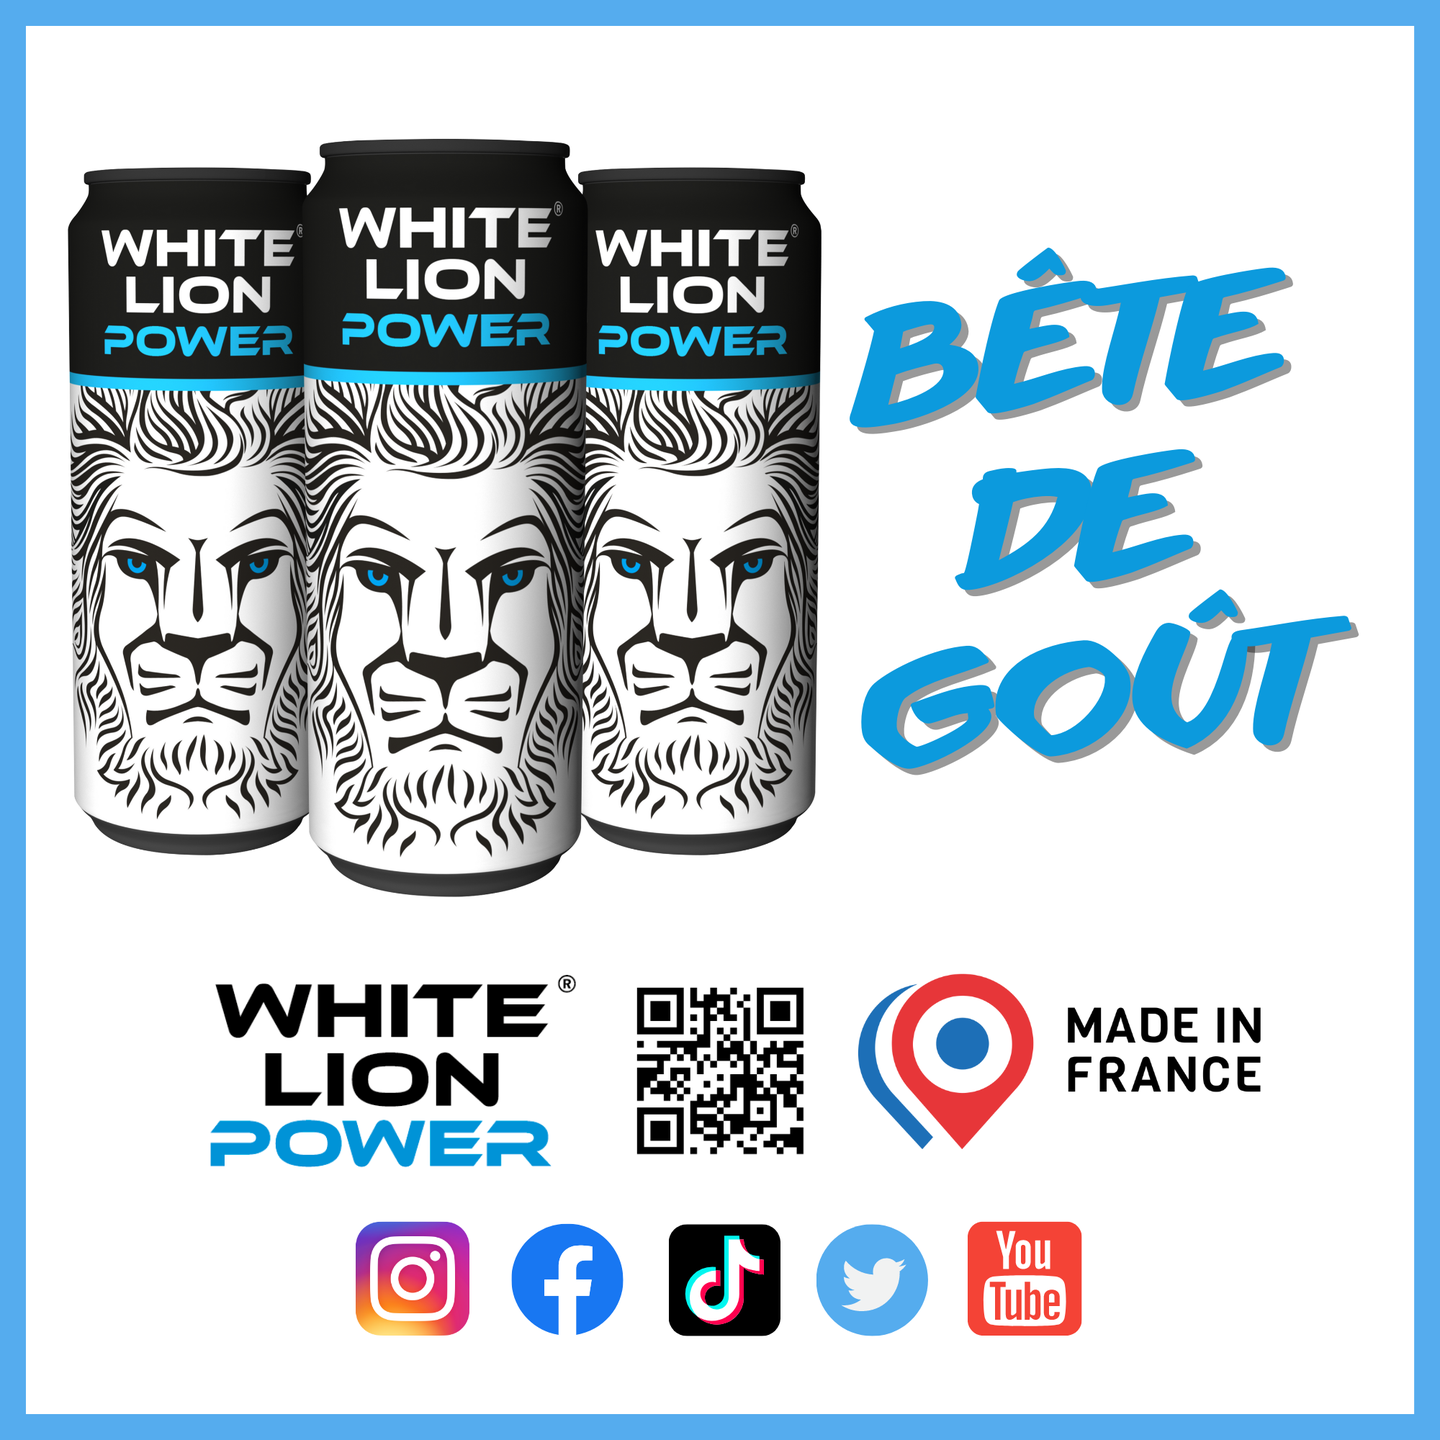 White Lion Power